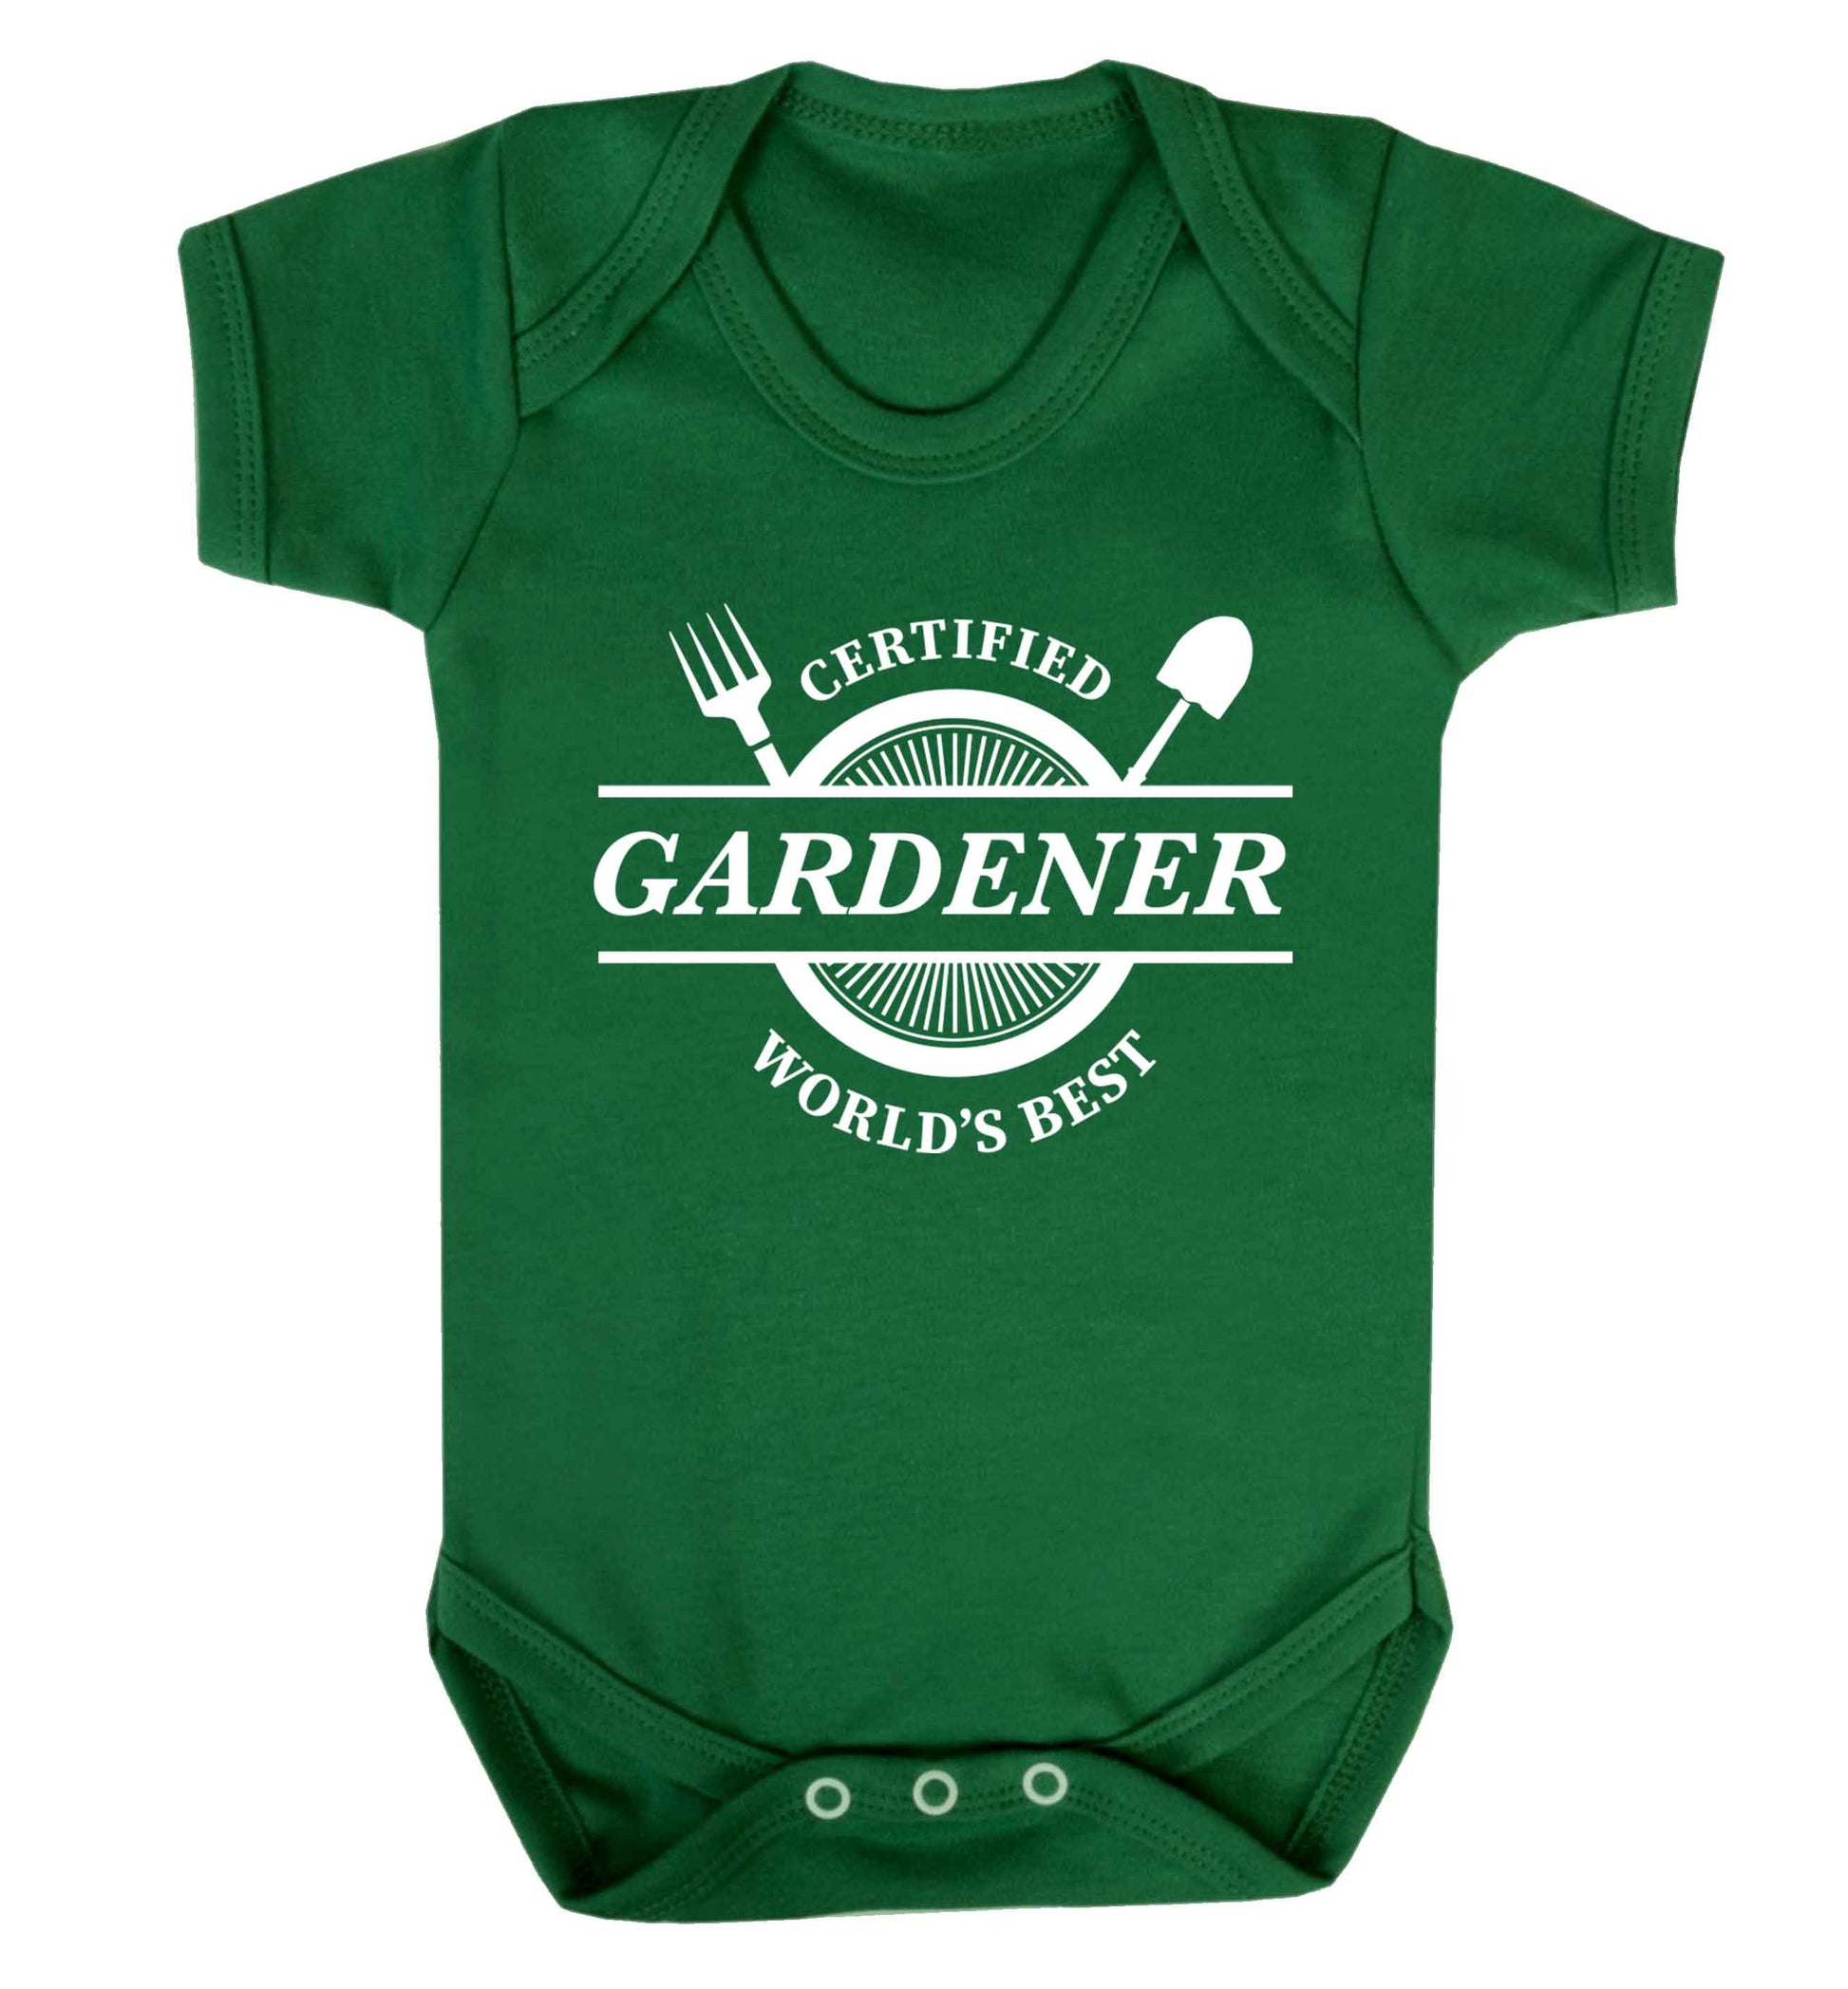 Certified gardener worlds best Baby Vest green 18-24 months